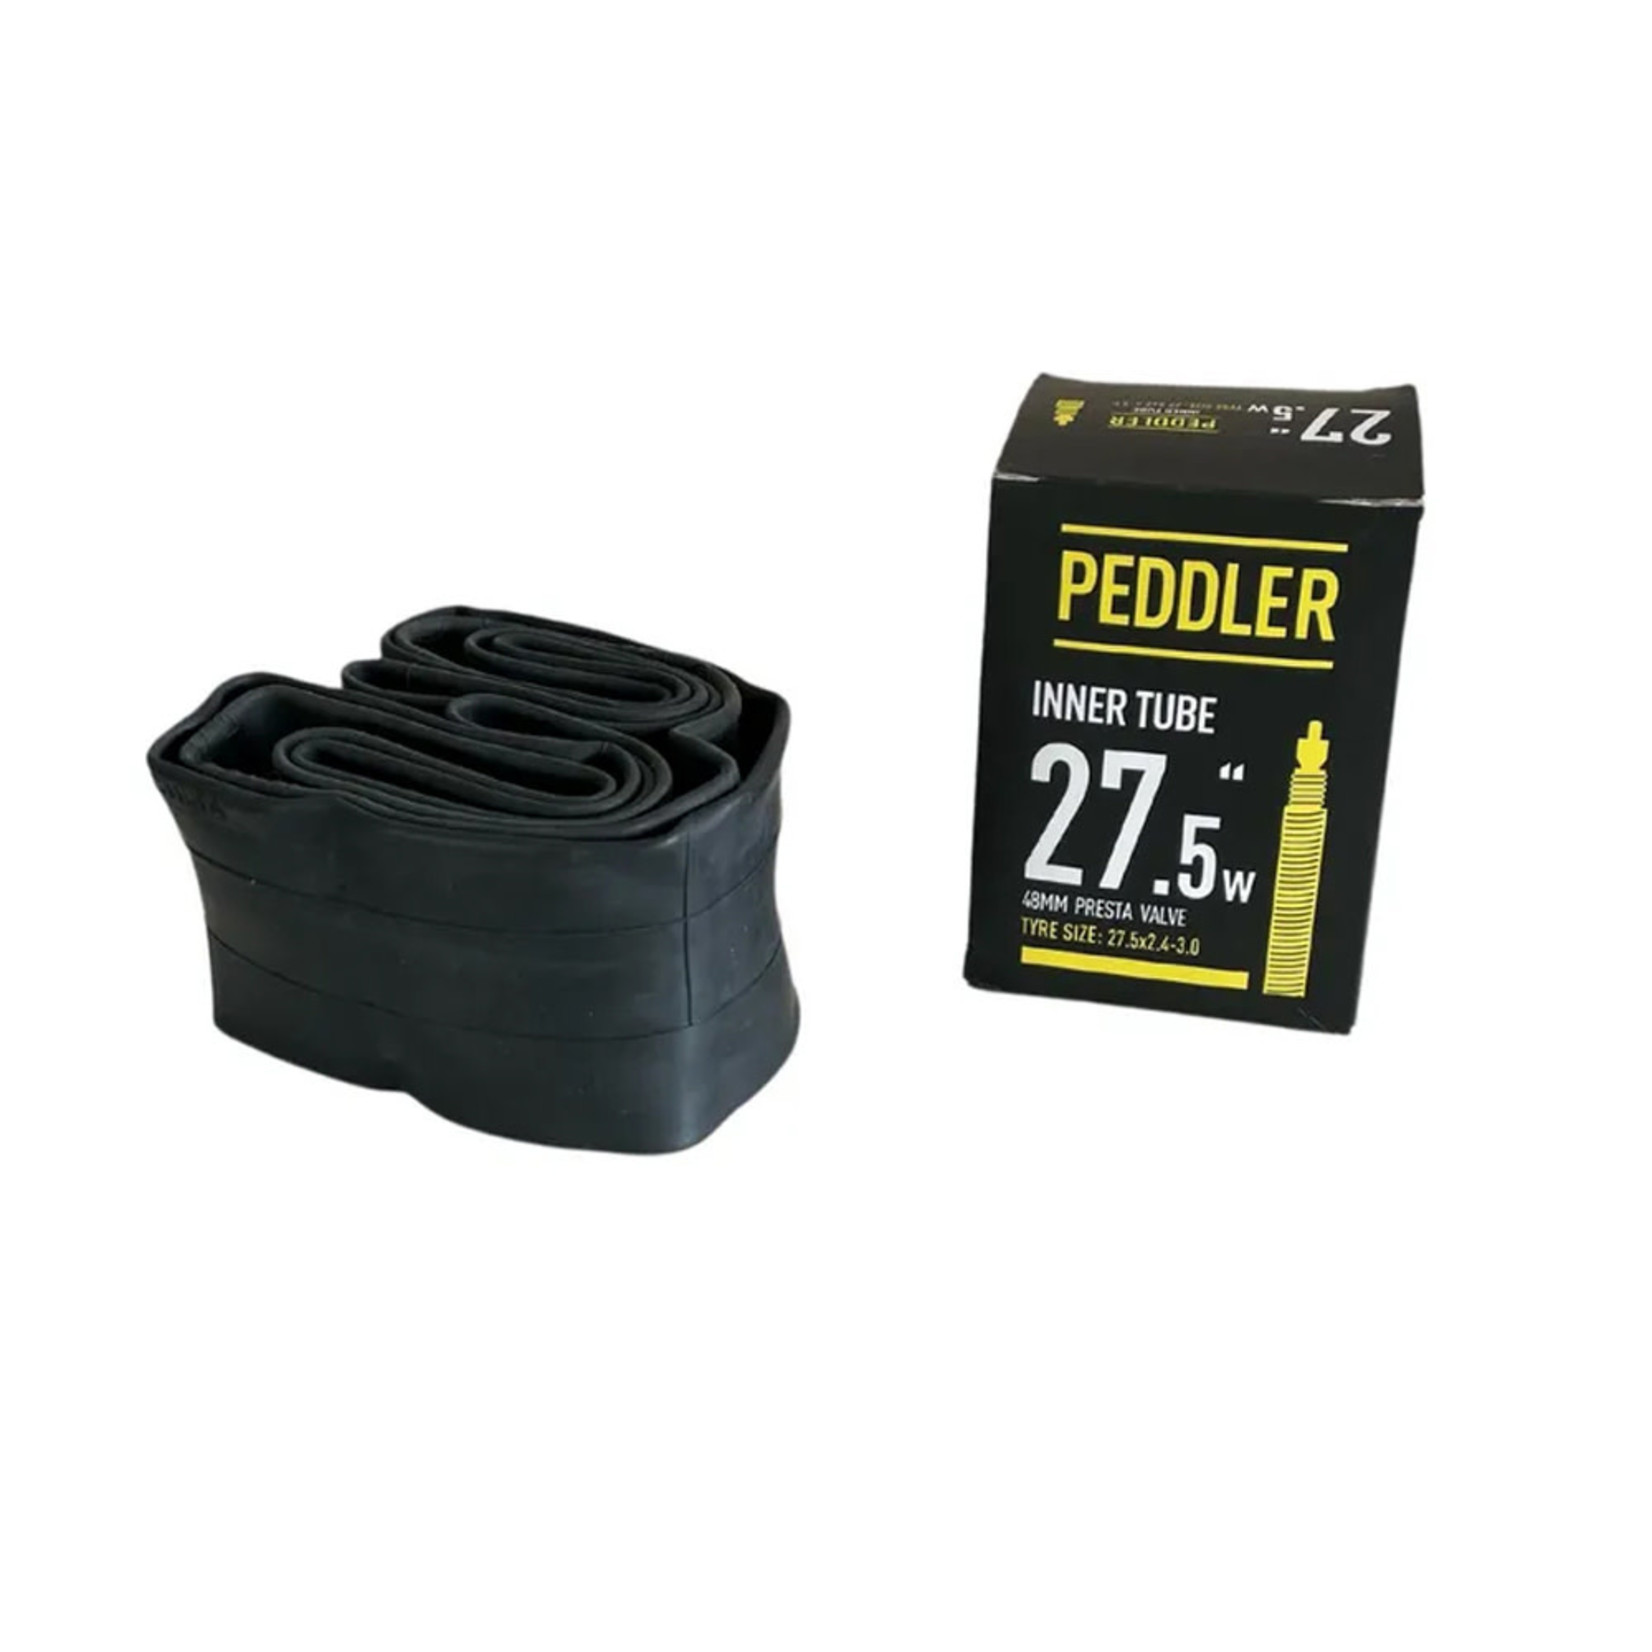 Bicycle Peddler Peddler Bike/Cycling Tube - 27.5X2.4-3.0 FV - 48 RVC - Pair